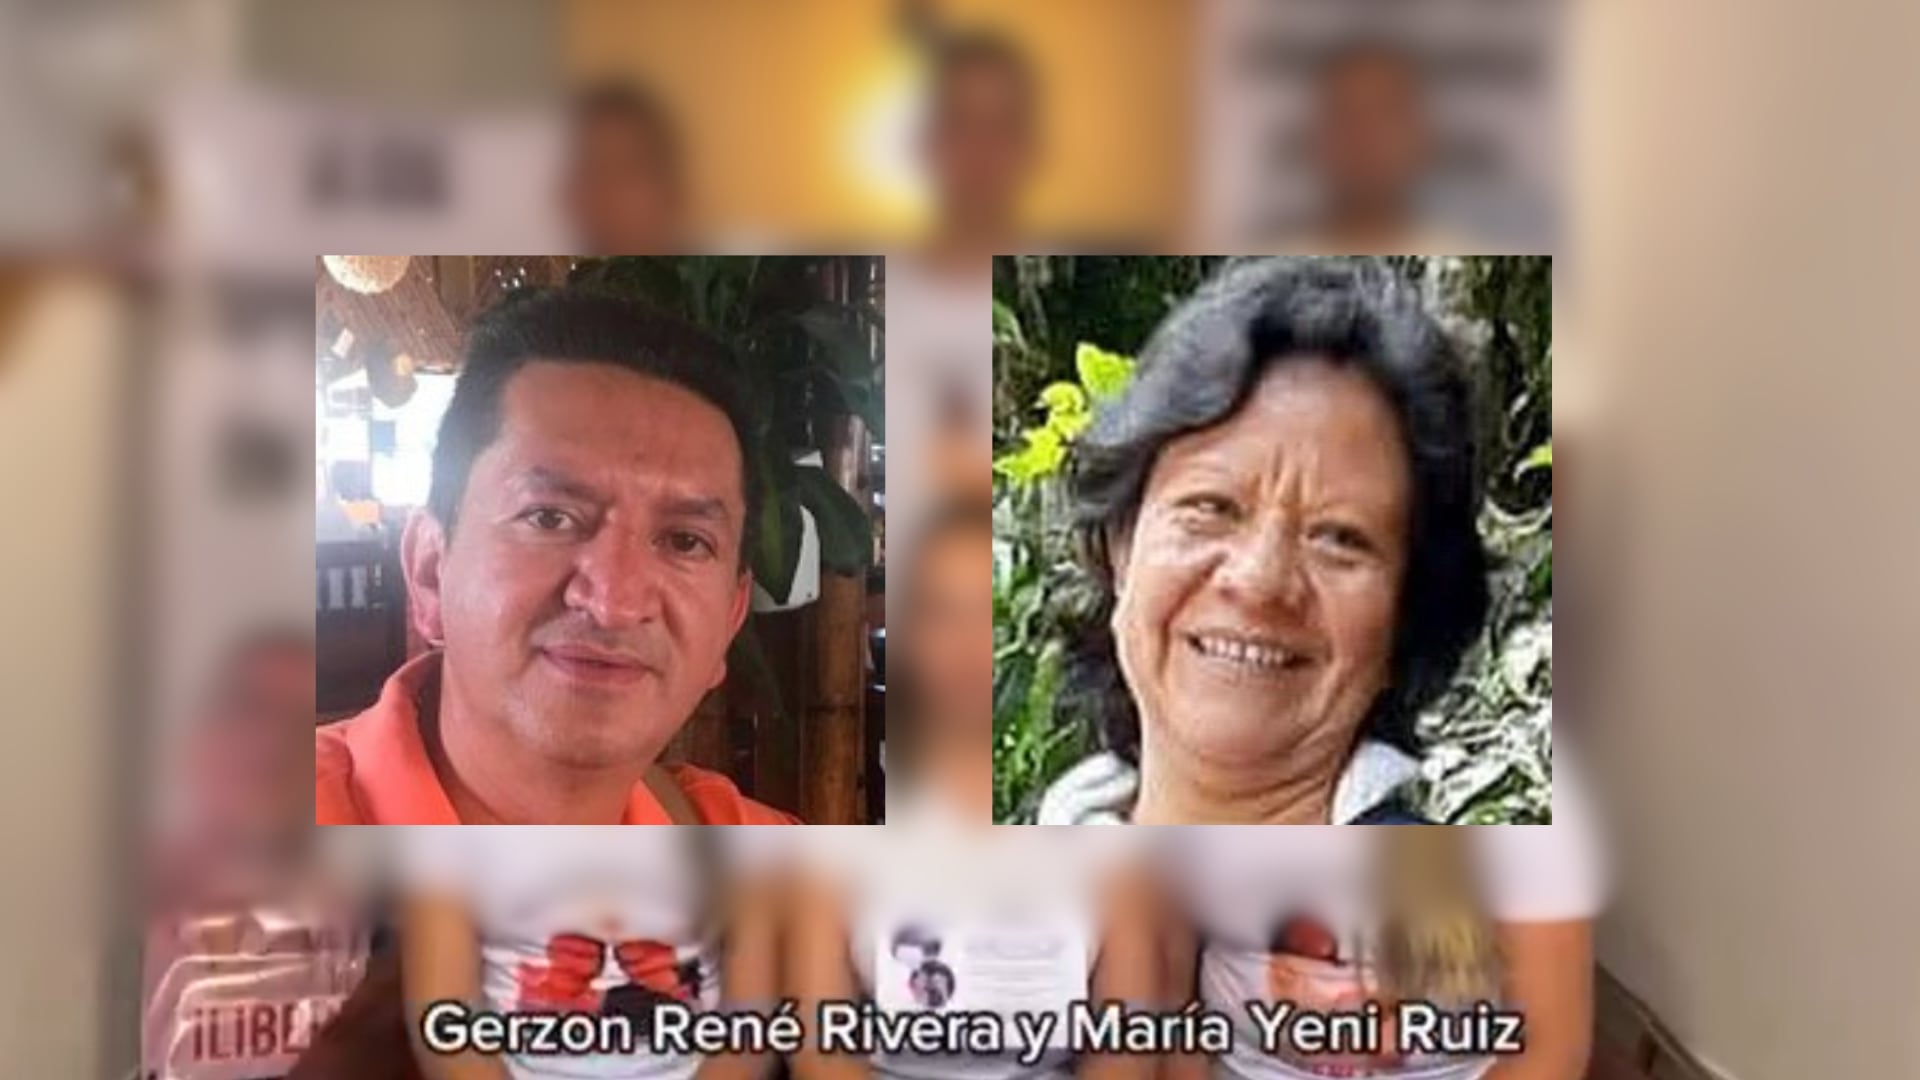 Estos son los fiscales secuestrados por las disidencias de las Farc en Cauca, Gerzon René Rivera y Maria Yeni Ruiz - crédito Colprensa y redes sociales